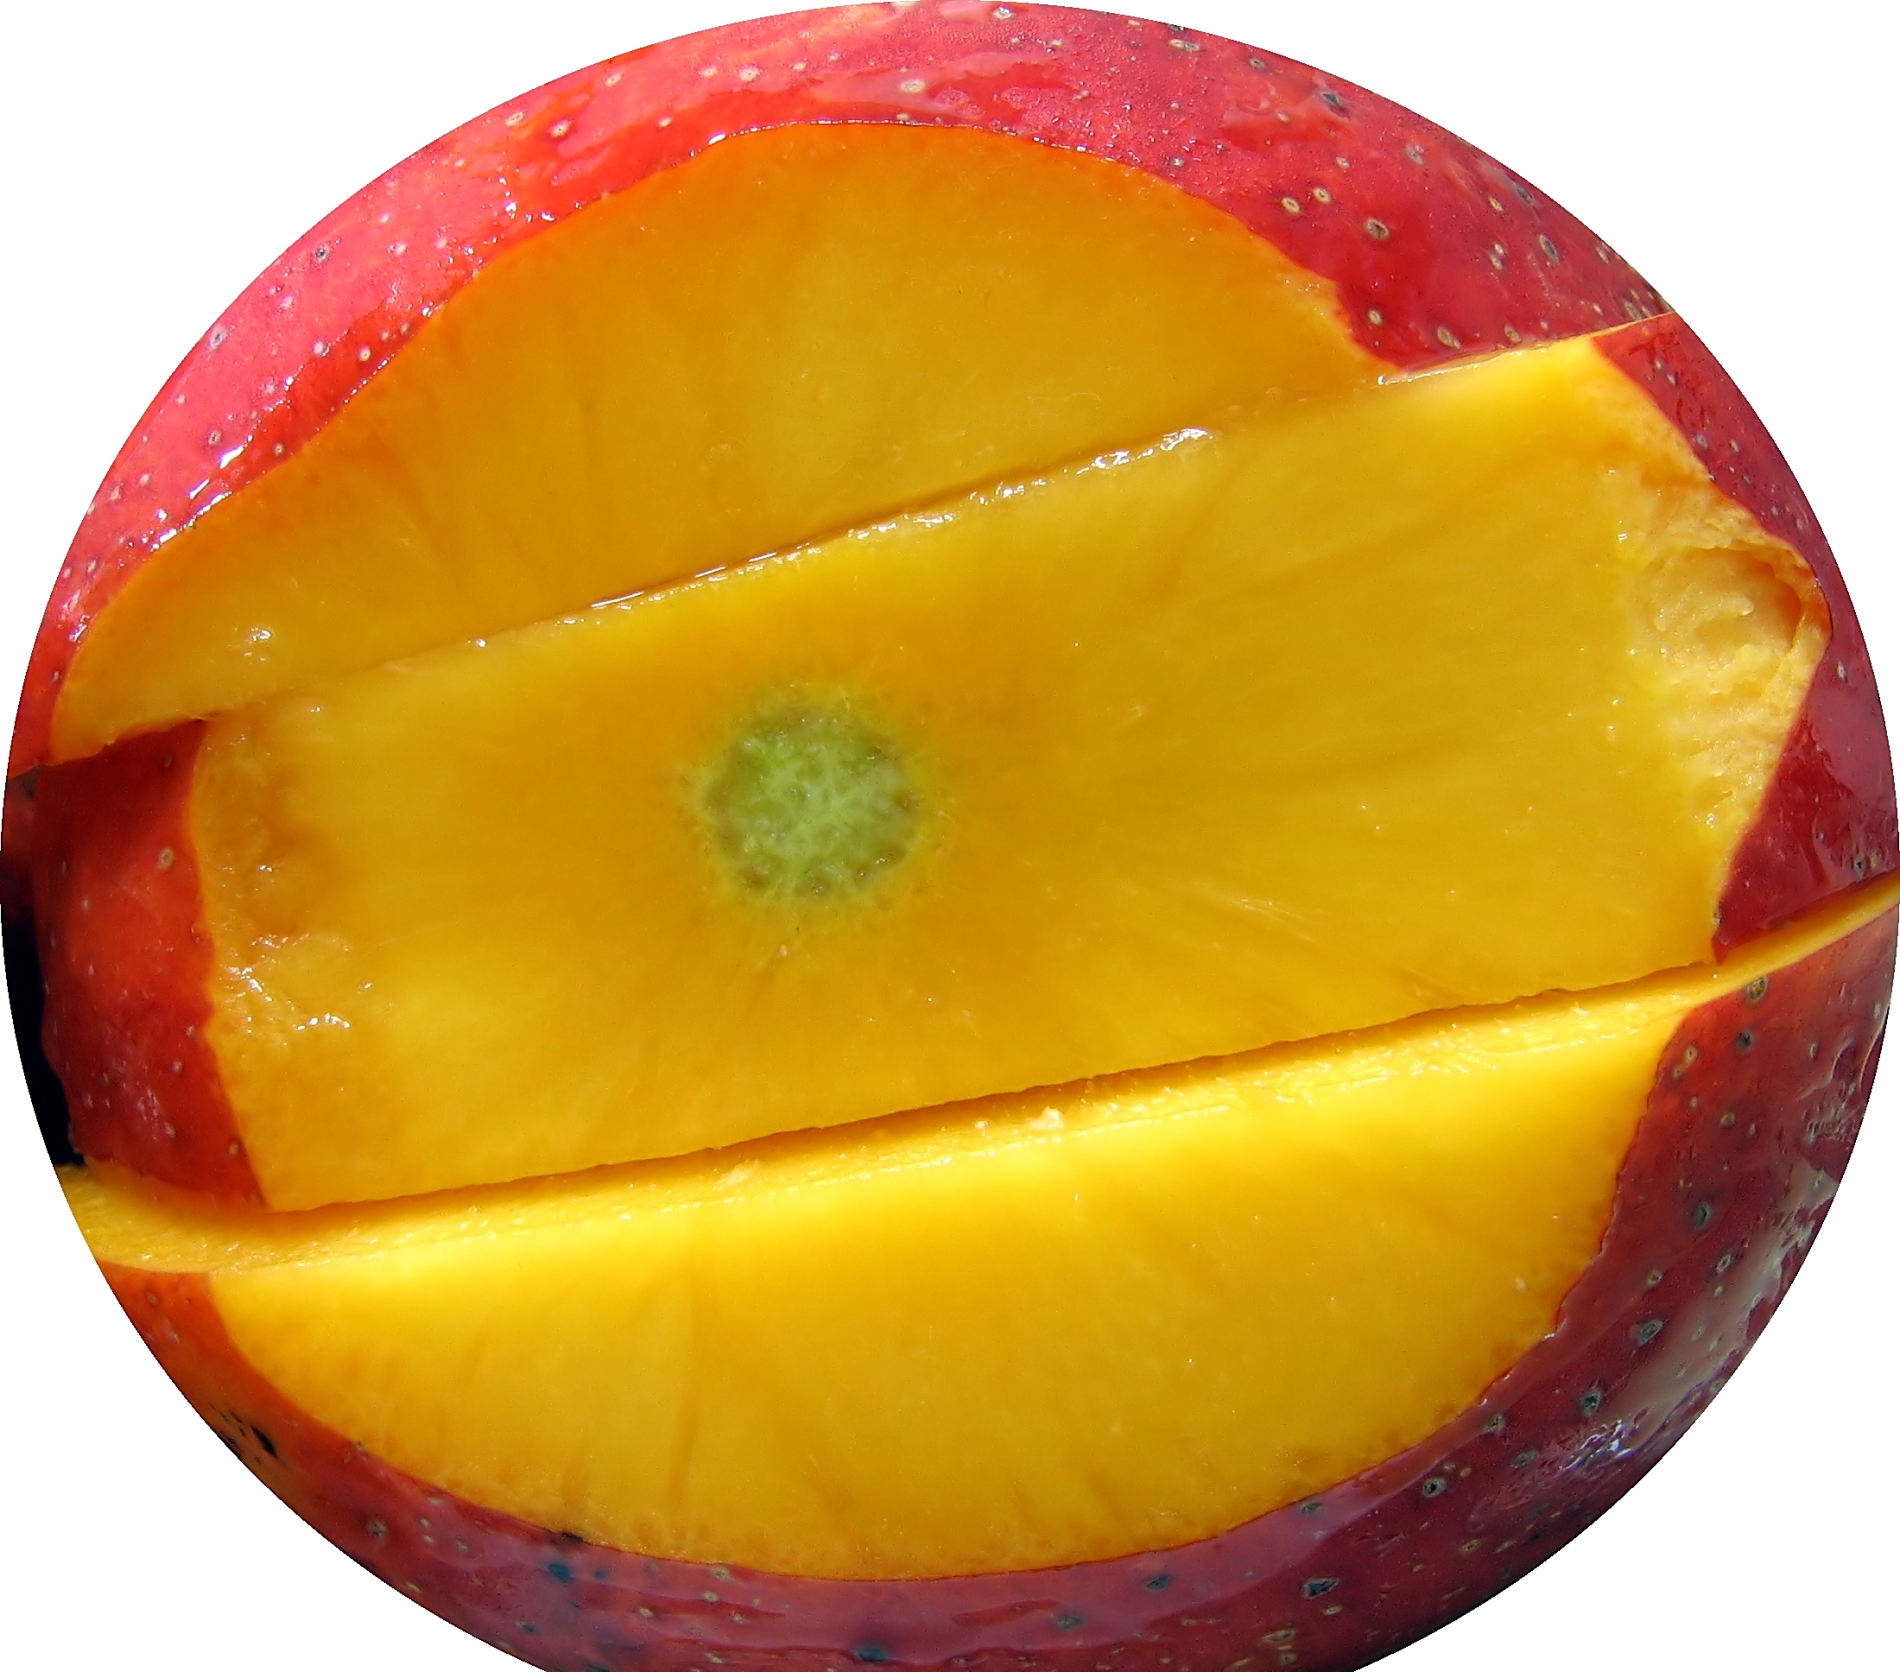 Juicy mango stock image. Image of mango, dessert, fresh 27330453